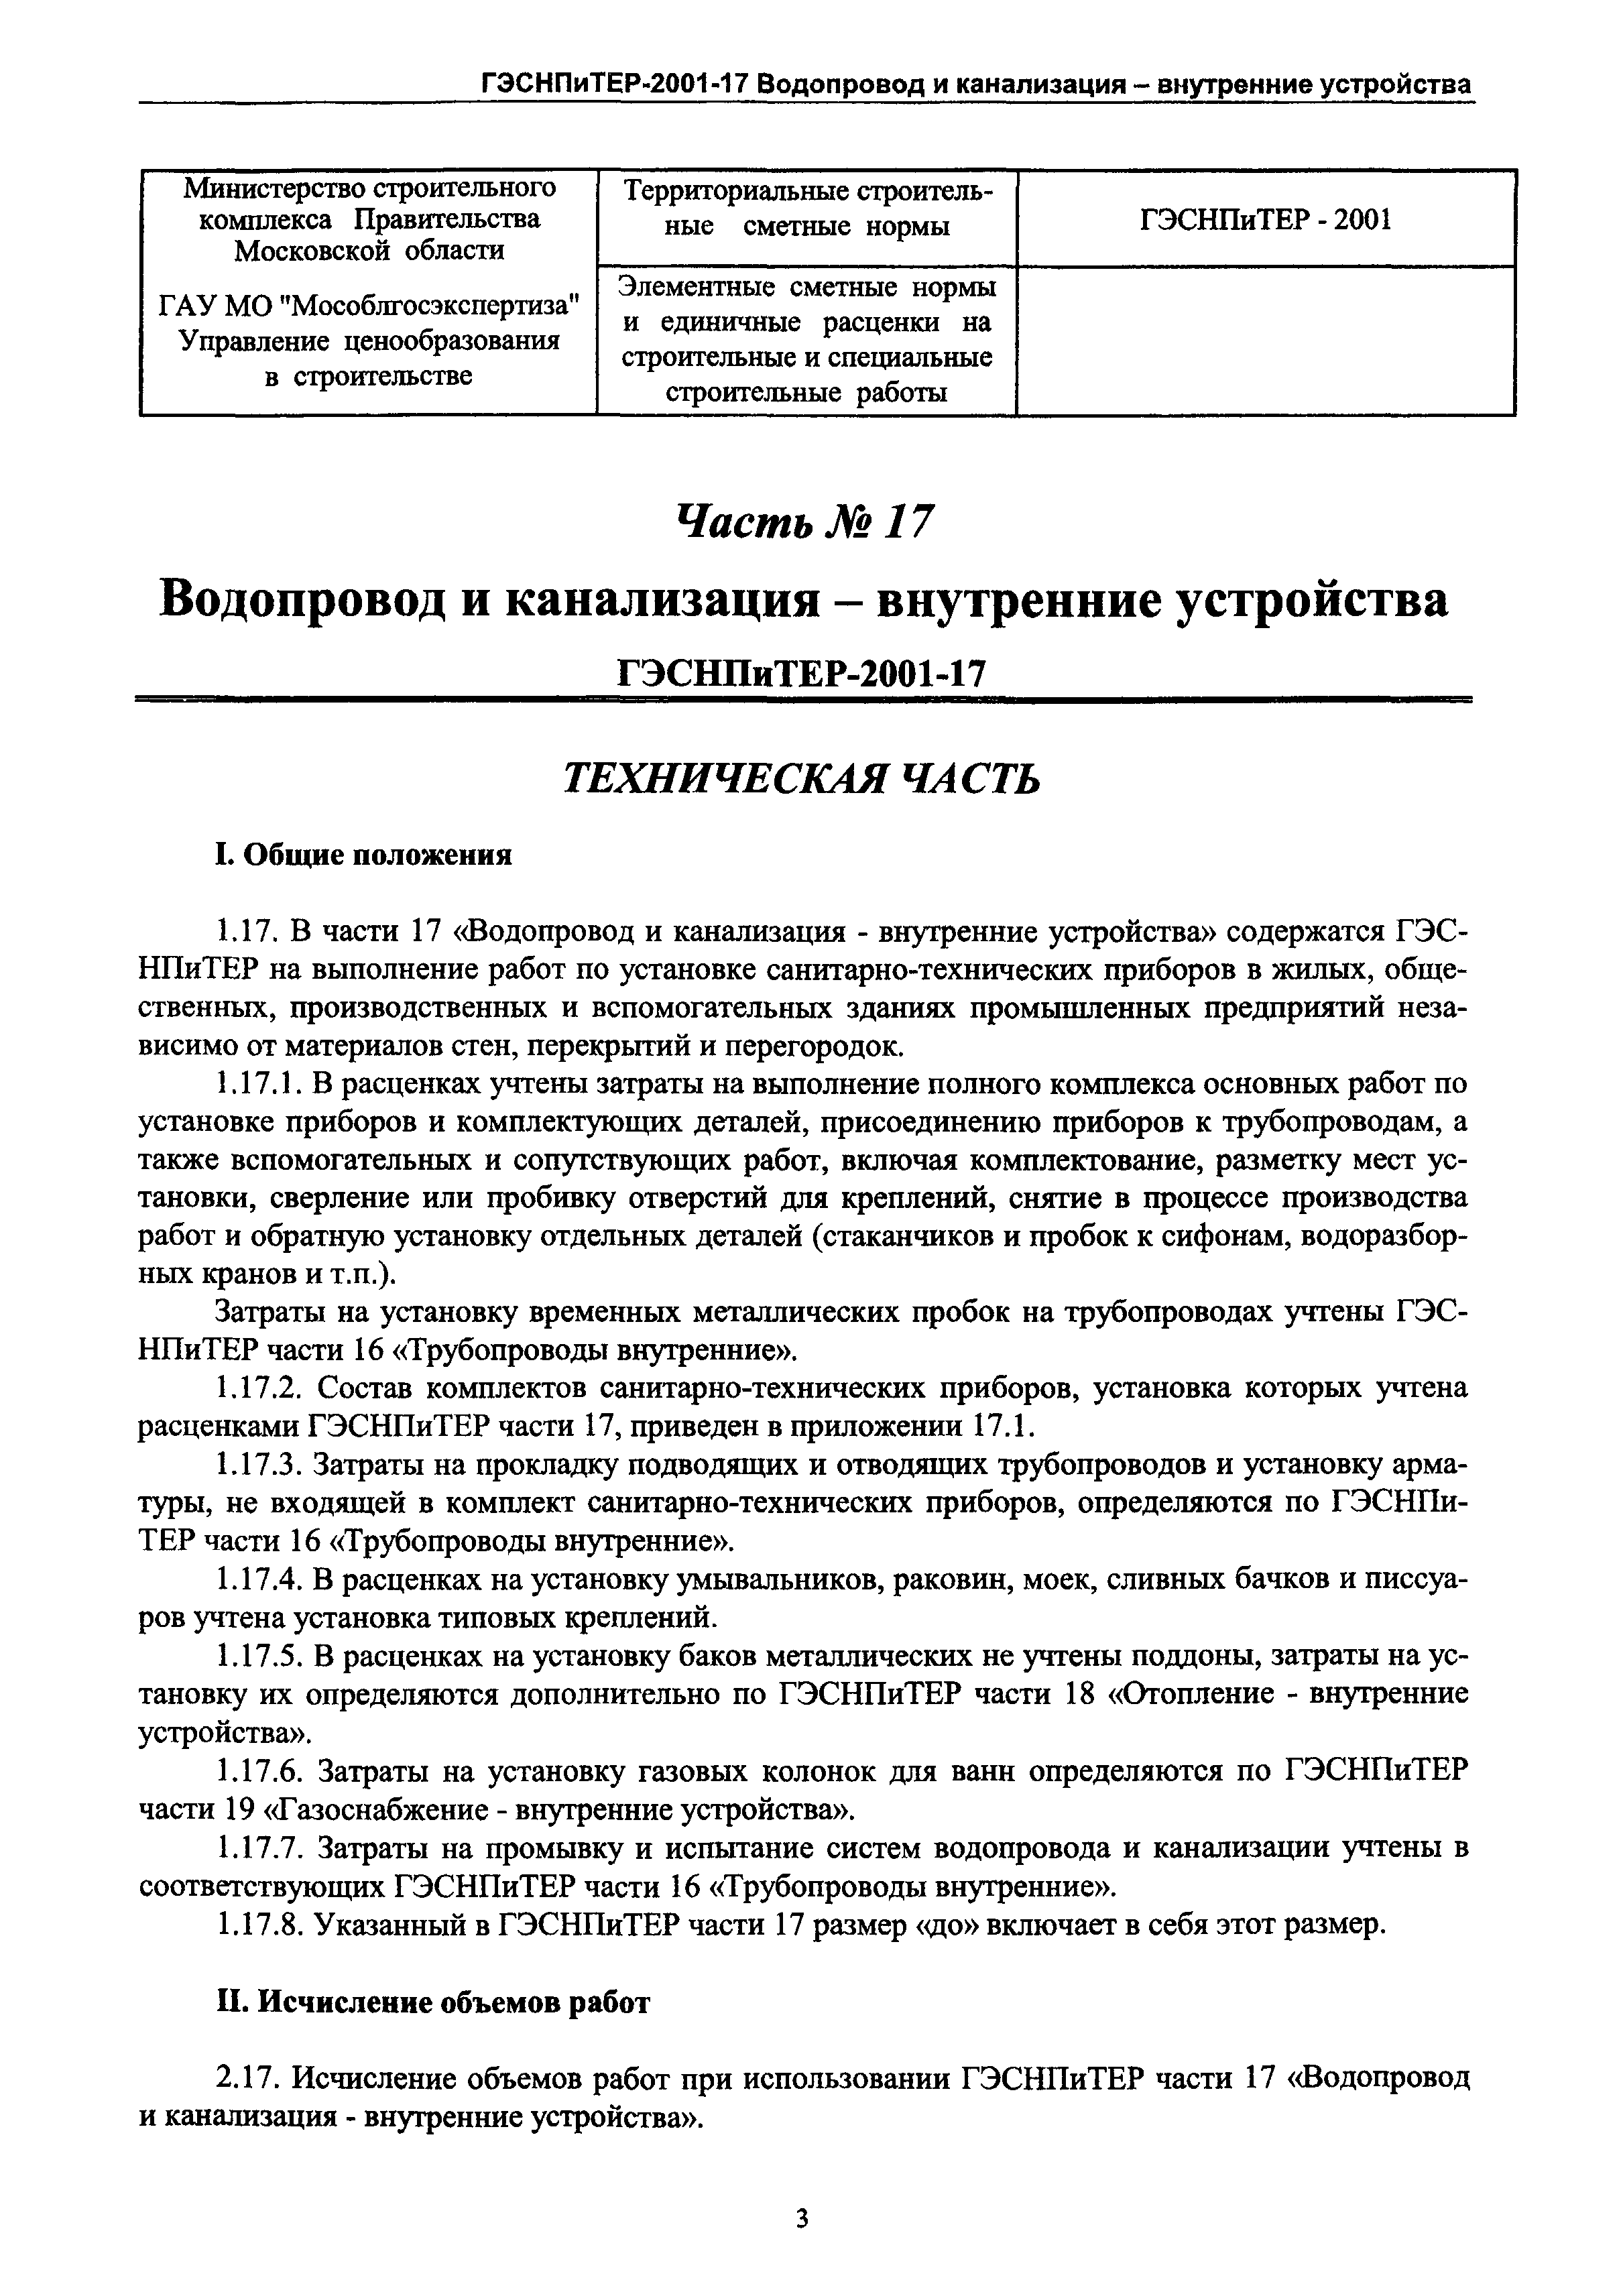 ГЭСНПиТЕР 2001-17 Московской области